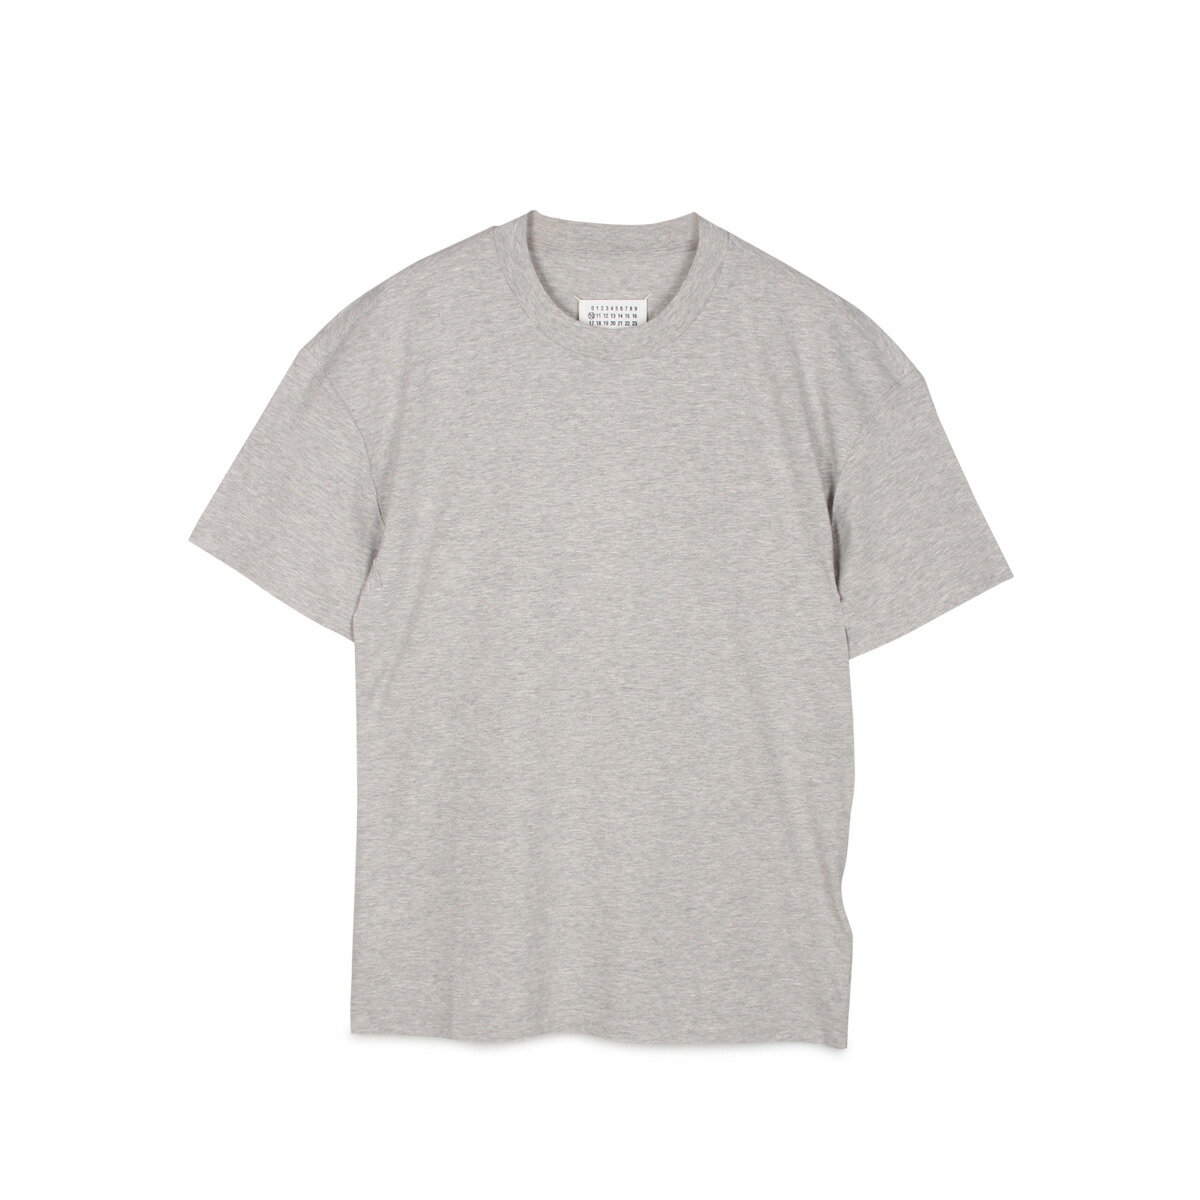 MAISON MARGIELA T SHIRT メゾンマルジェラ Tシャツ 半袖 メンズ グレー S50GC0600-856M